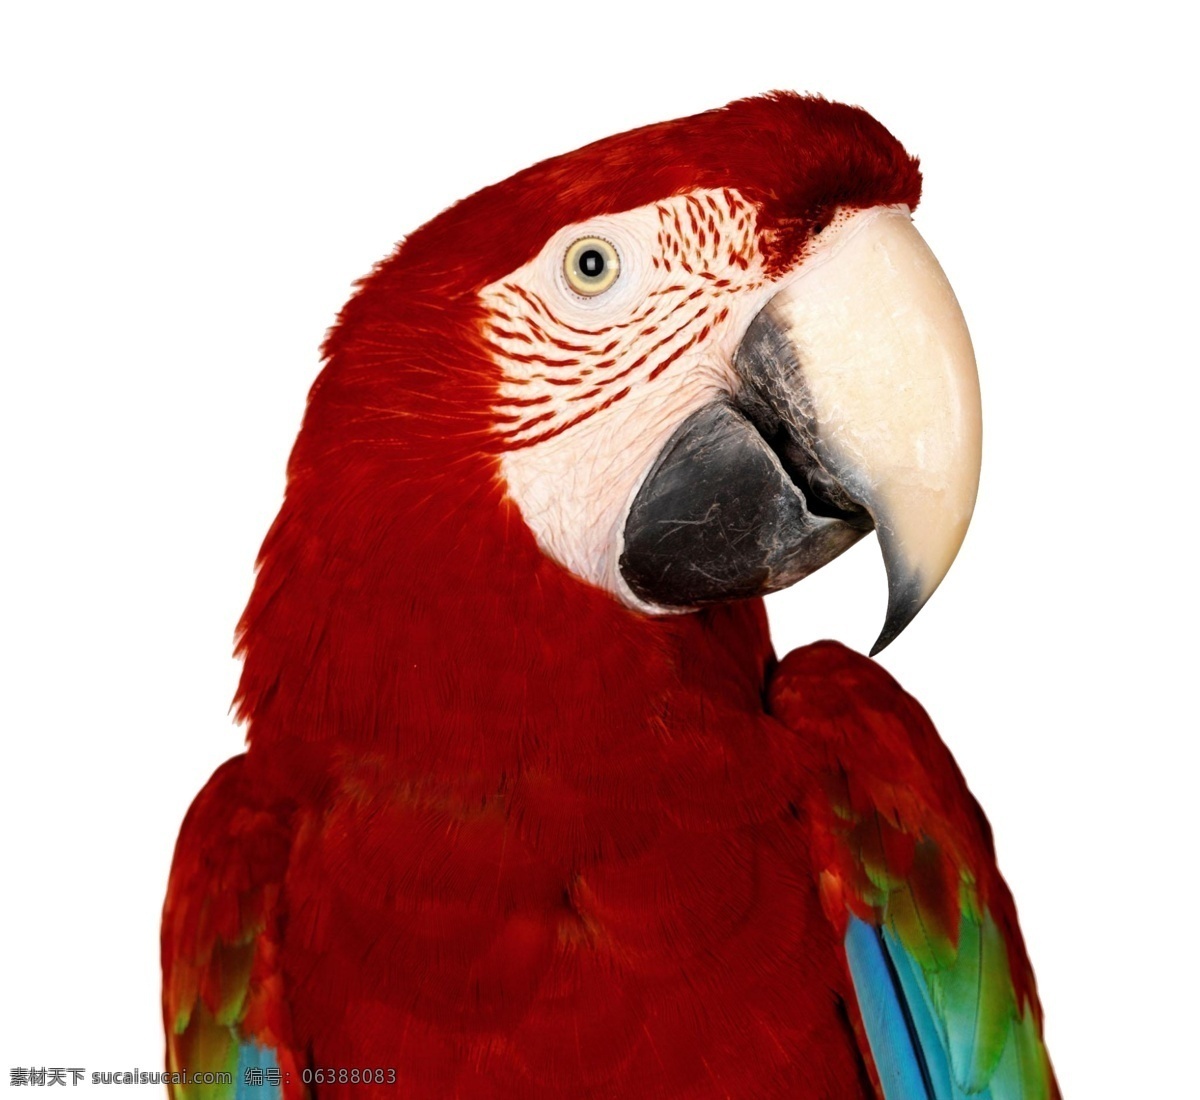 红色鹦鹉 鹦鹉 动物 一只鹦鹉 psd素材 分层 源文件